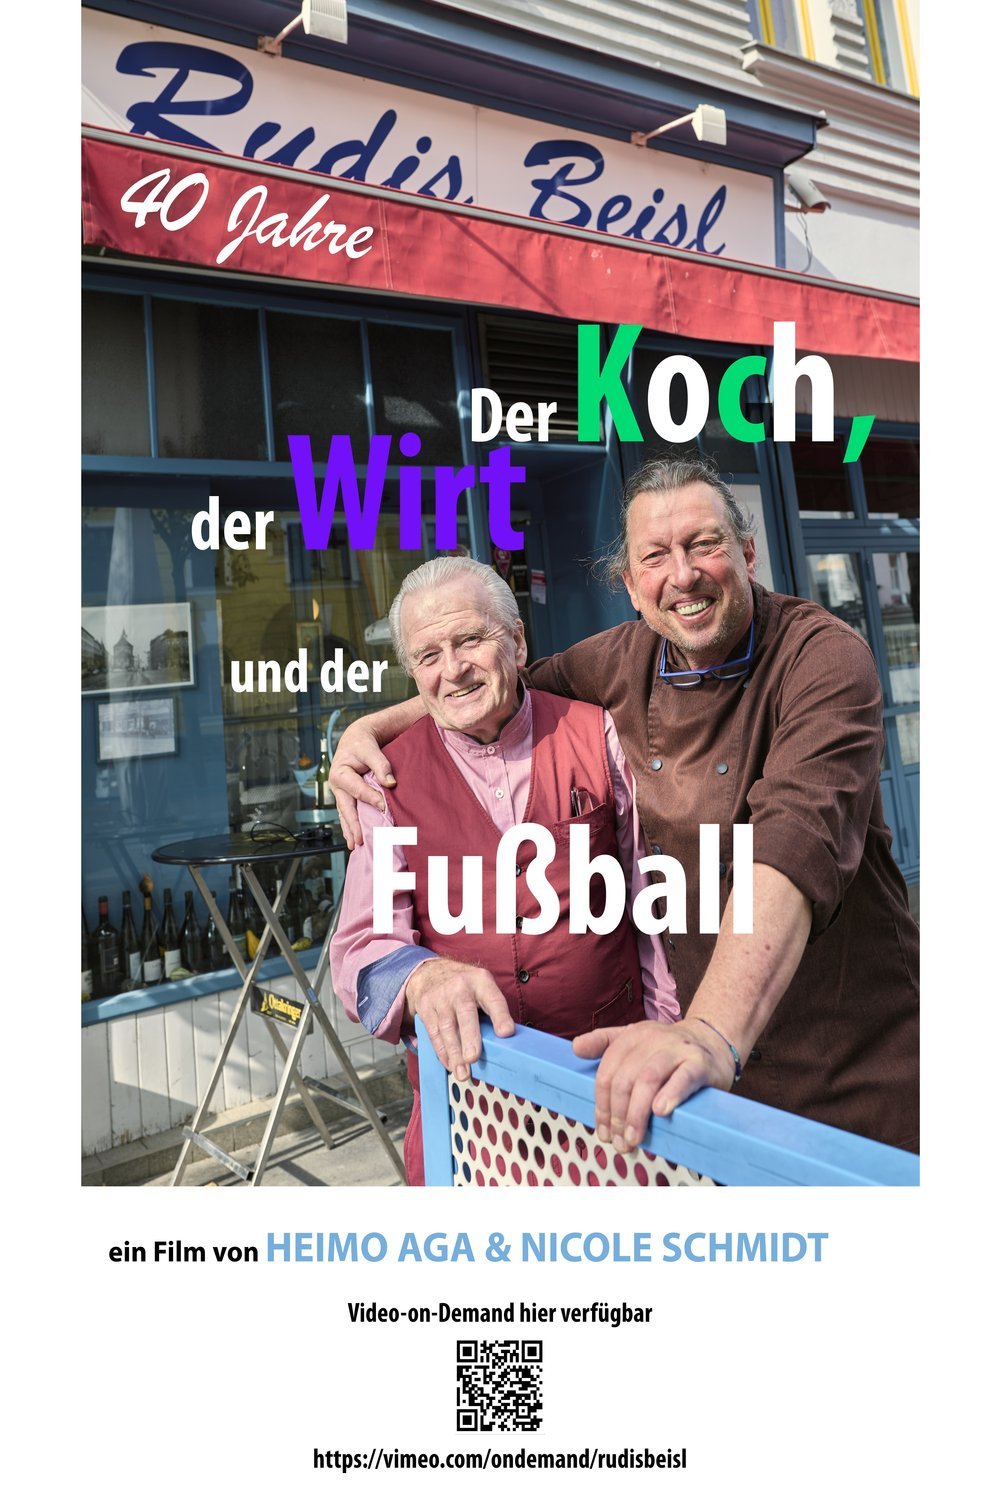 L'affiche originale du film Der Koch, der Wirt und der Fußball - 40 Jahre Rudis Beisl en allemand